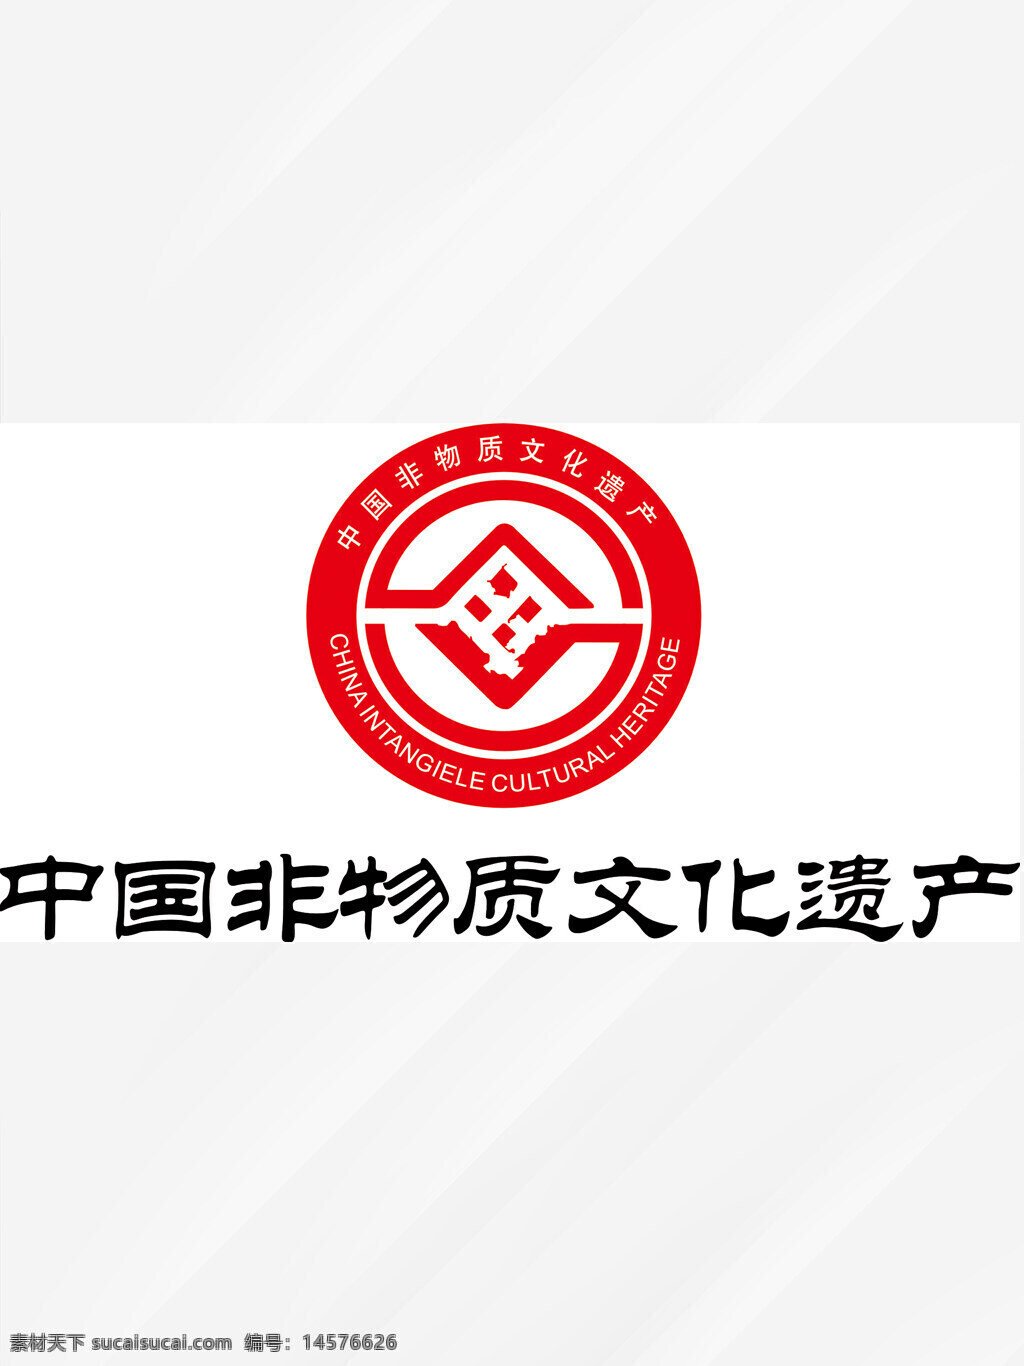 中国非物质 文化遗产logo 非遗 非物质文化 设计 广告设计 logo设计 非遗logo矢量